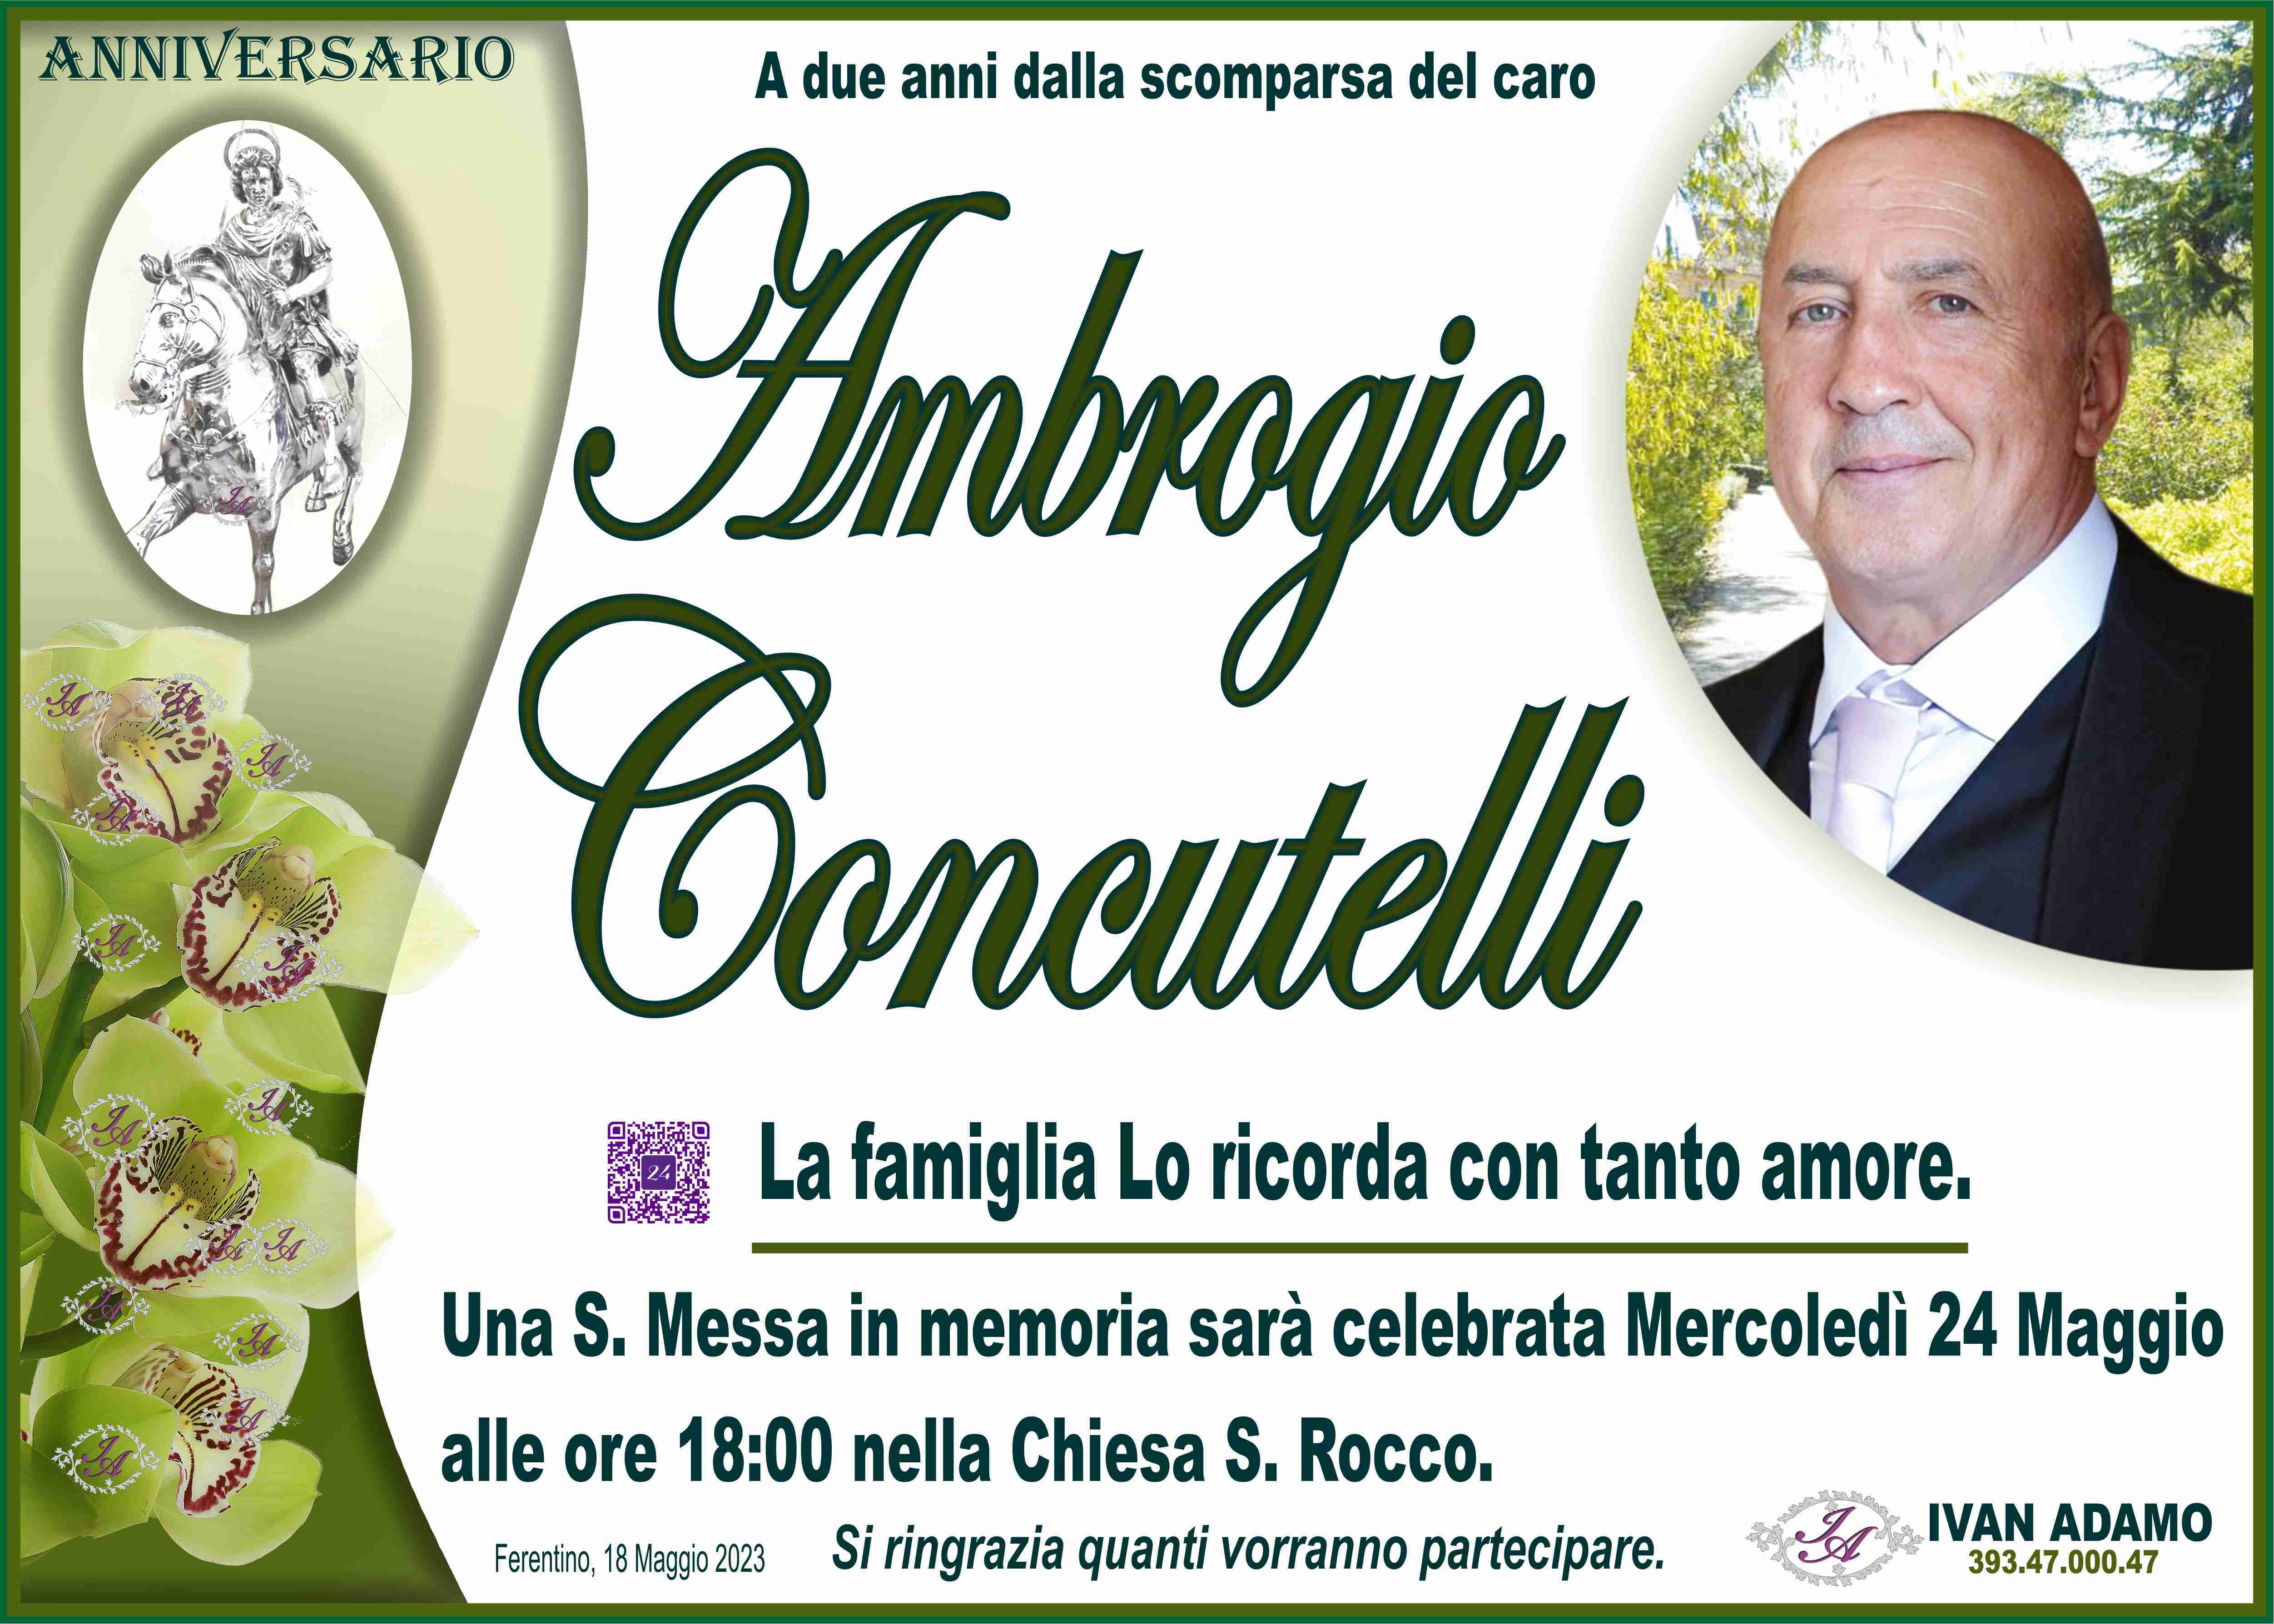 Ambrogio Concutelli